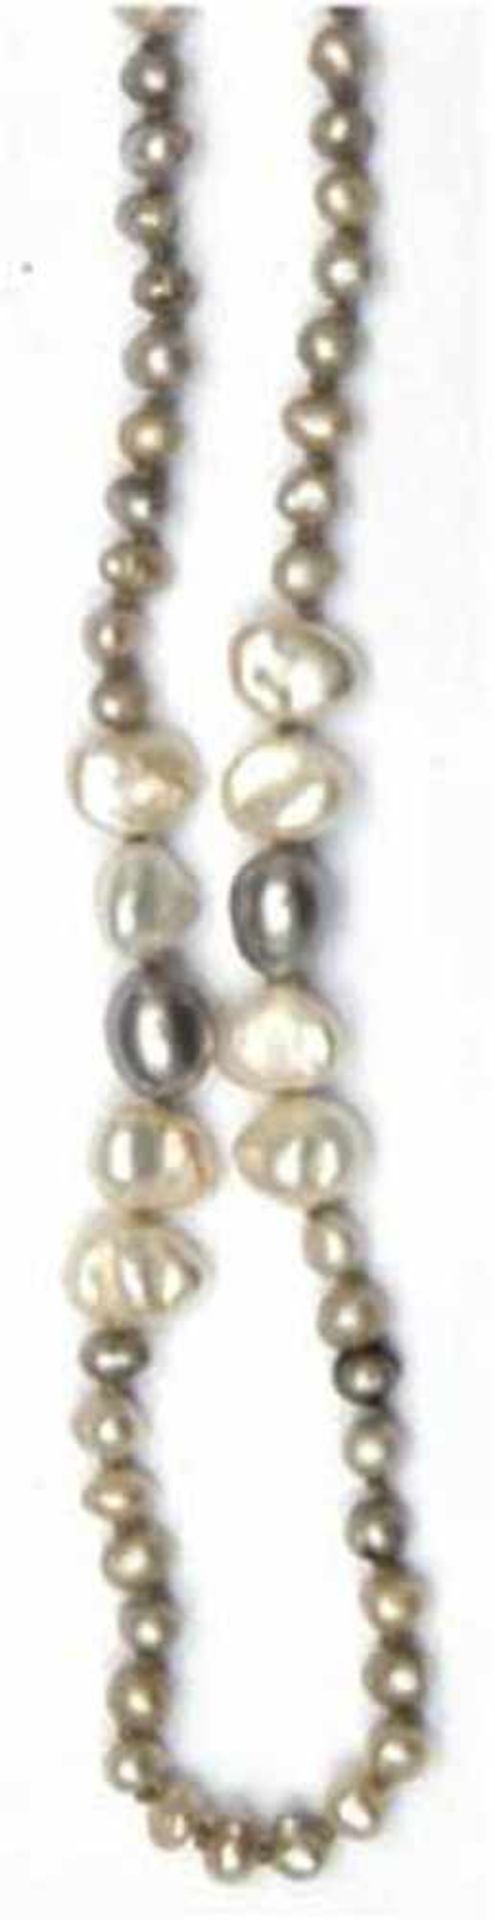 Keshi-Perlenkette, multicolor, 585er WG-Schließe, L. 80 cm- - -23.80 % buyer's premium on the hammer